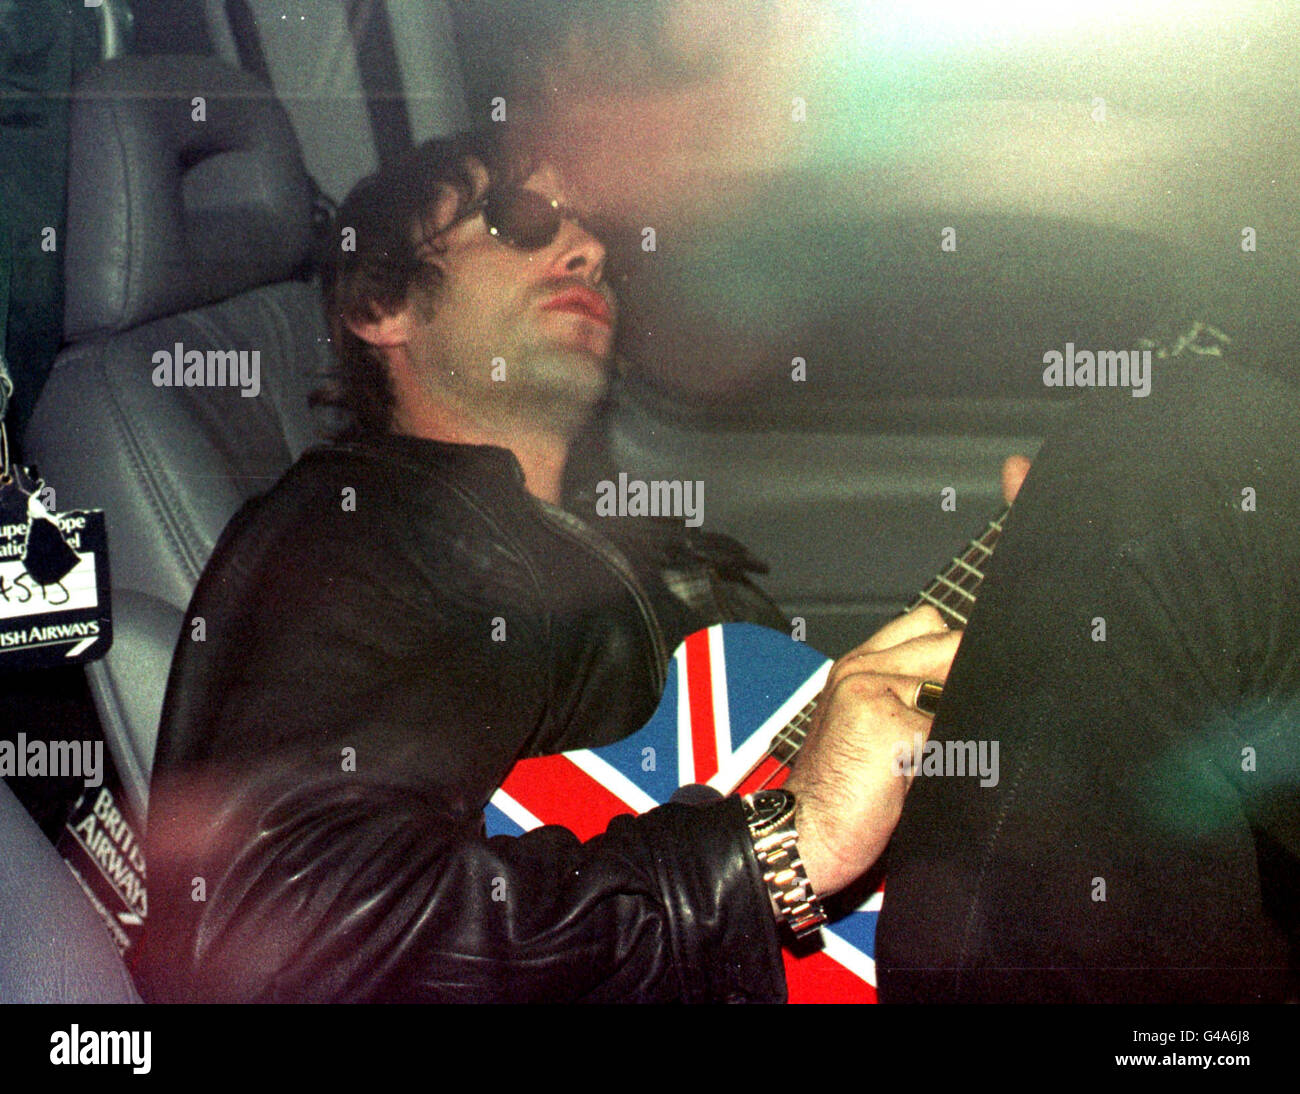 Liam Gallagher, Leadsänger der Rockband Oasis, klimpert auf seiner Gitarre, während er in abgedunkelten Limosinen vom Flughafen Gatwick vertrieben wird, nachdem er heute (Freitag) am Ende der weltweiten Tournee der Band aus Mexiko zurückgekehrt ist. Siehe PA Story SHOWBIZ Oasis. Foto von Adam Butler Stockfoto